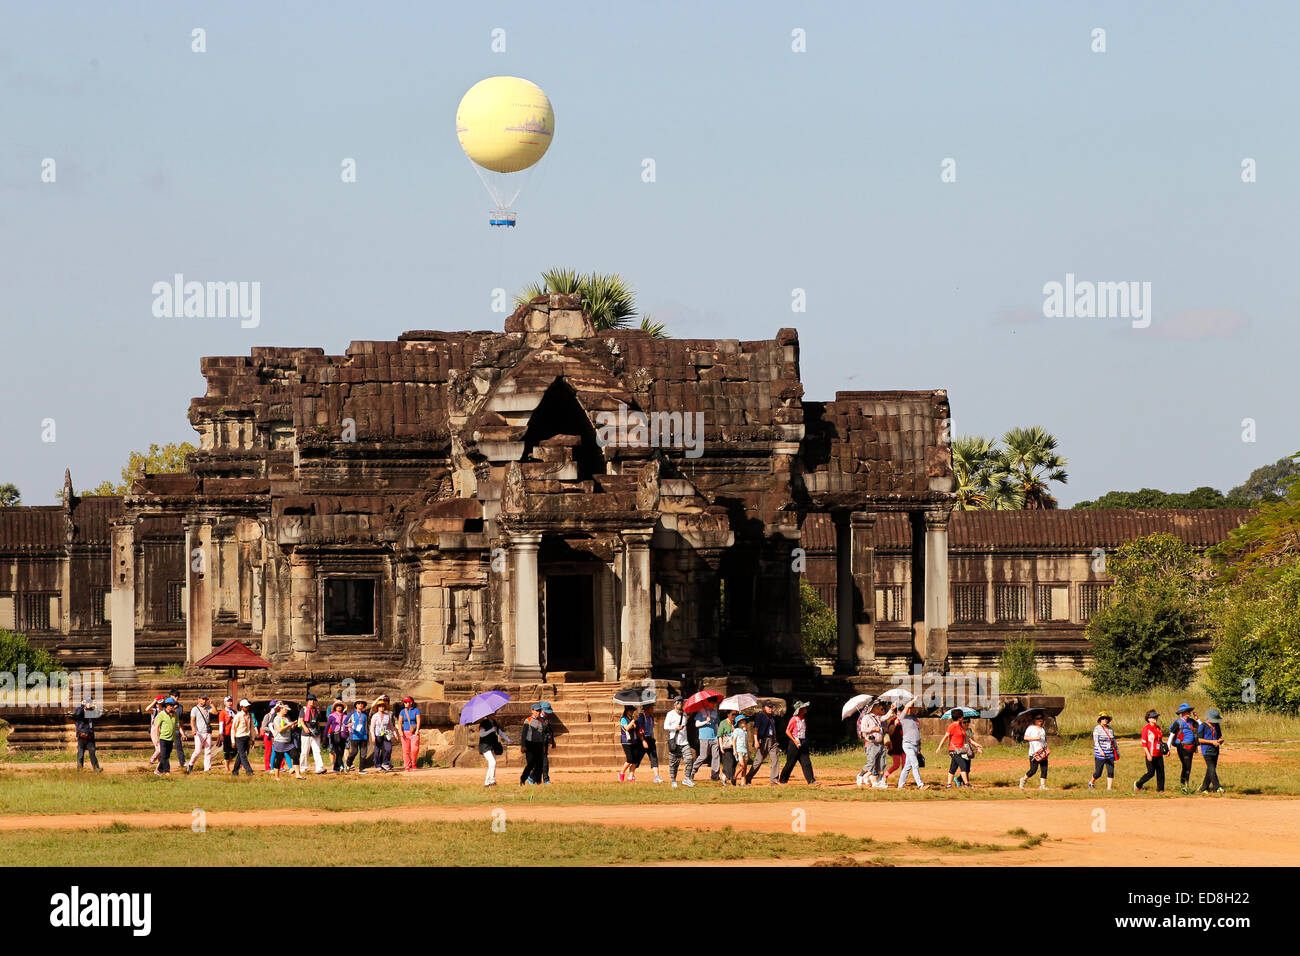 Un groupe de touristes au temple d'Angkor Wat au Cambodge avec la montgolfière qui monte pour permettre aux touristes de négliger le te Banque D'Images